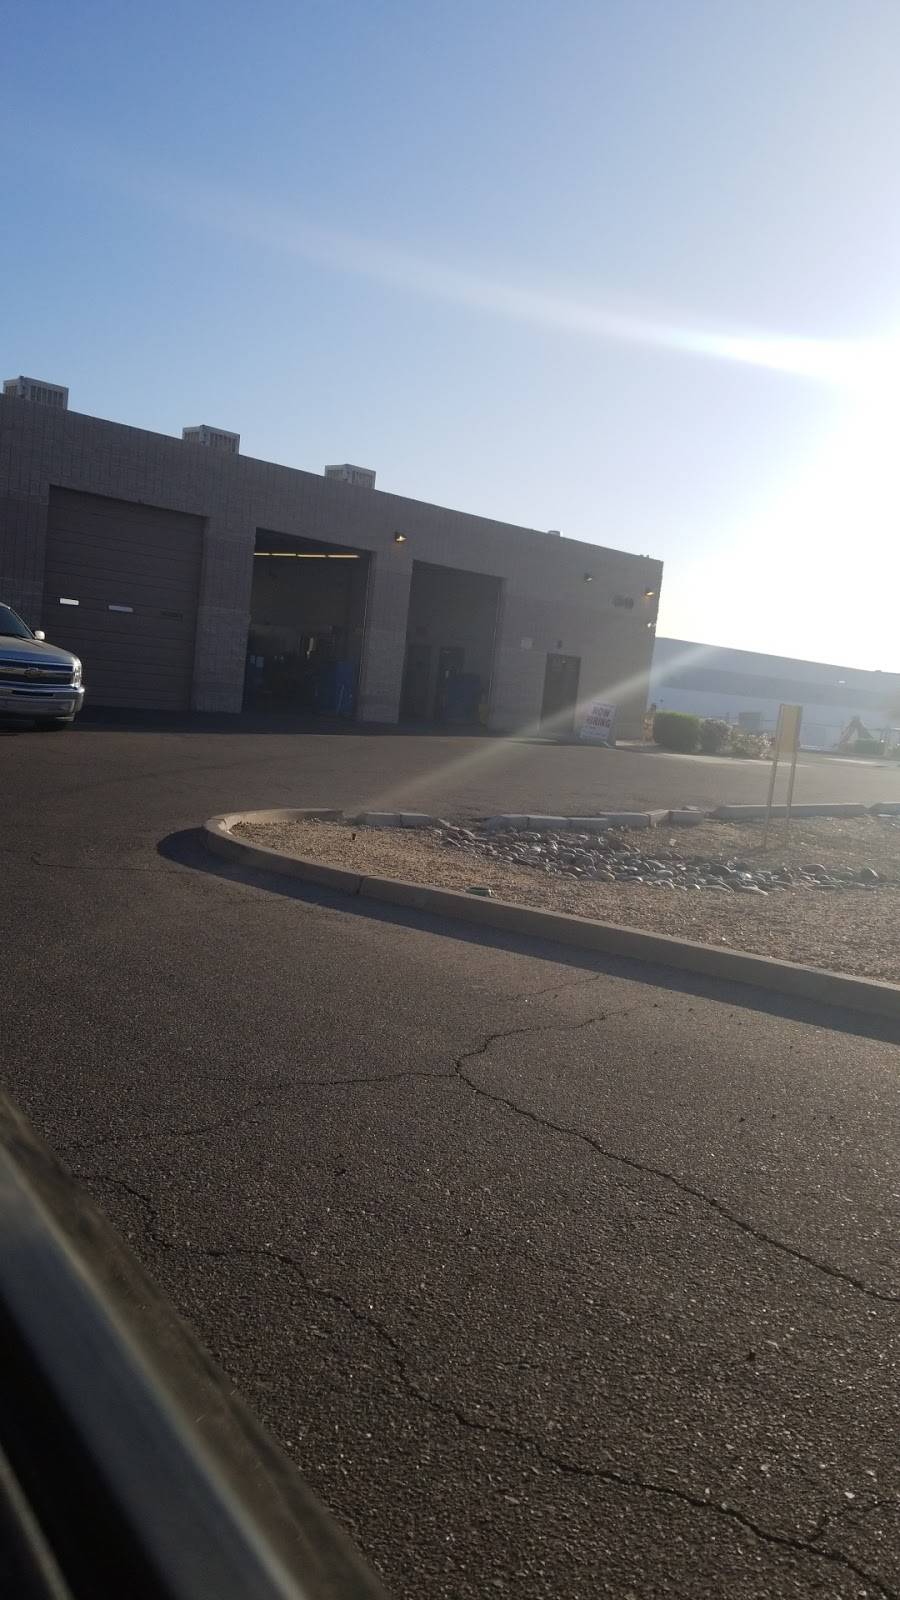 ADEQ Vehicle Emissions Testing Station | e, 4949 E Madison St, Phoenix, AZ 85034 | Phone: (602) 771-3950